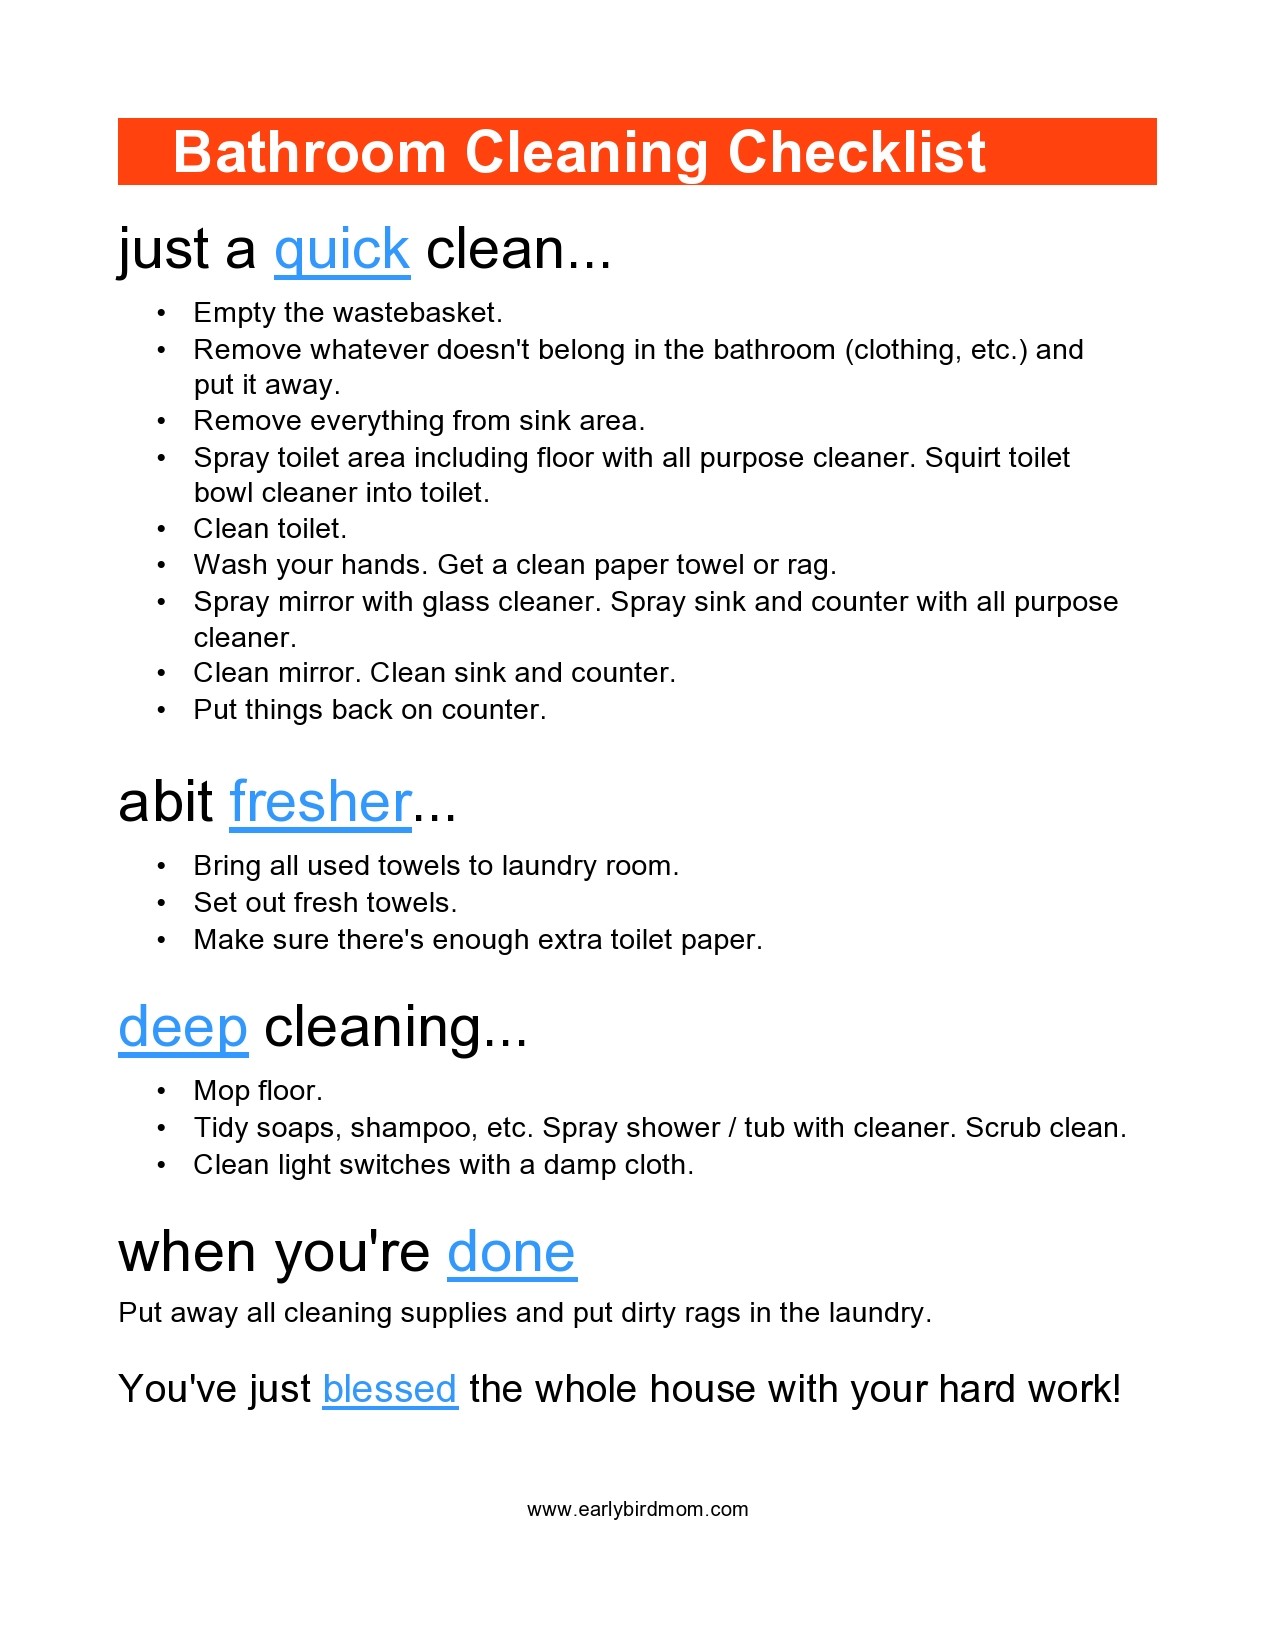 Free bathroom cleaning checklist 21